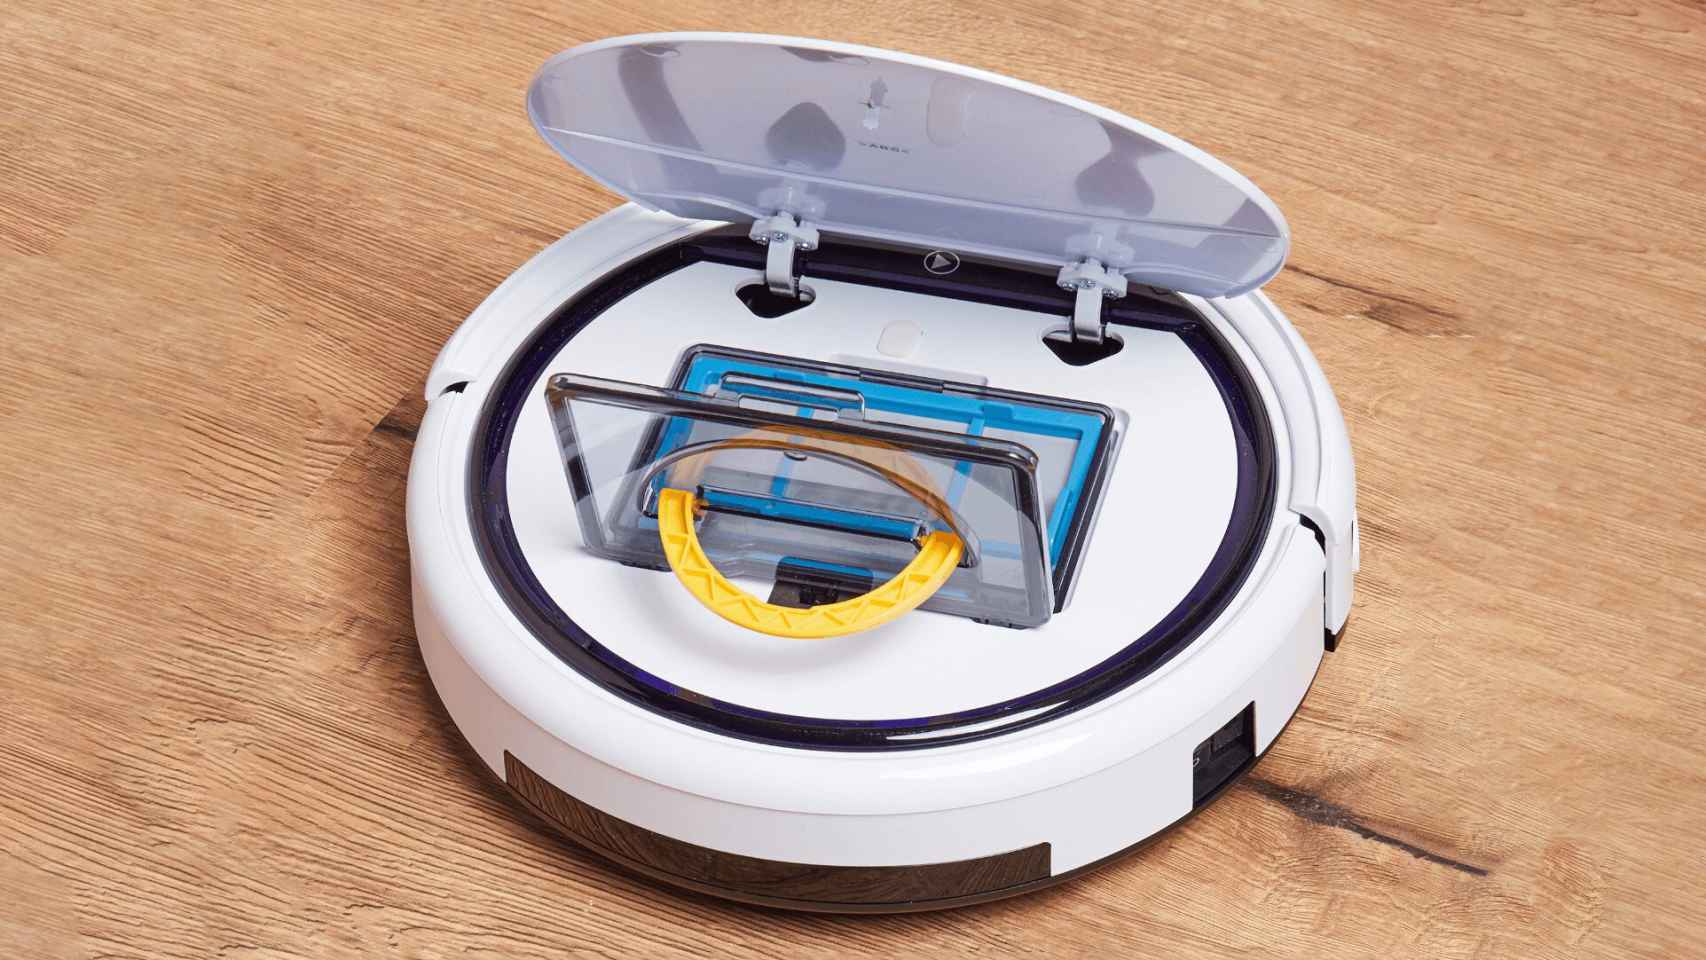 Aclarar fax Prueba de Derbeville Aldi tiene un robot aspirador barato que va directo contra la Roomba